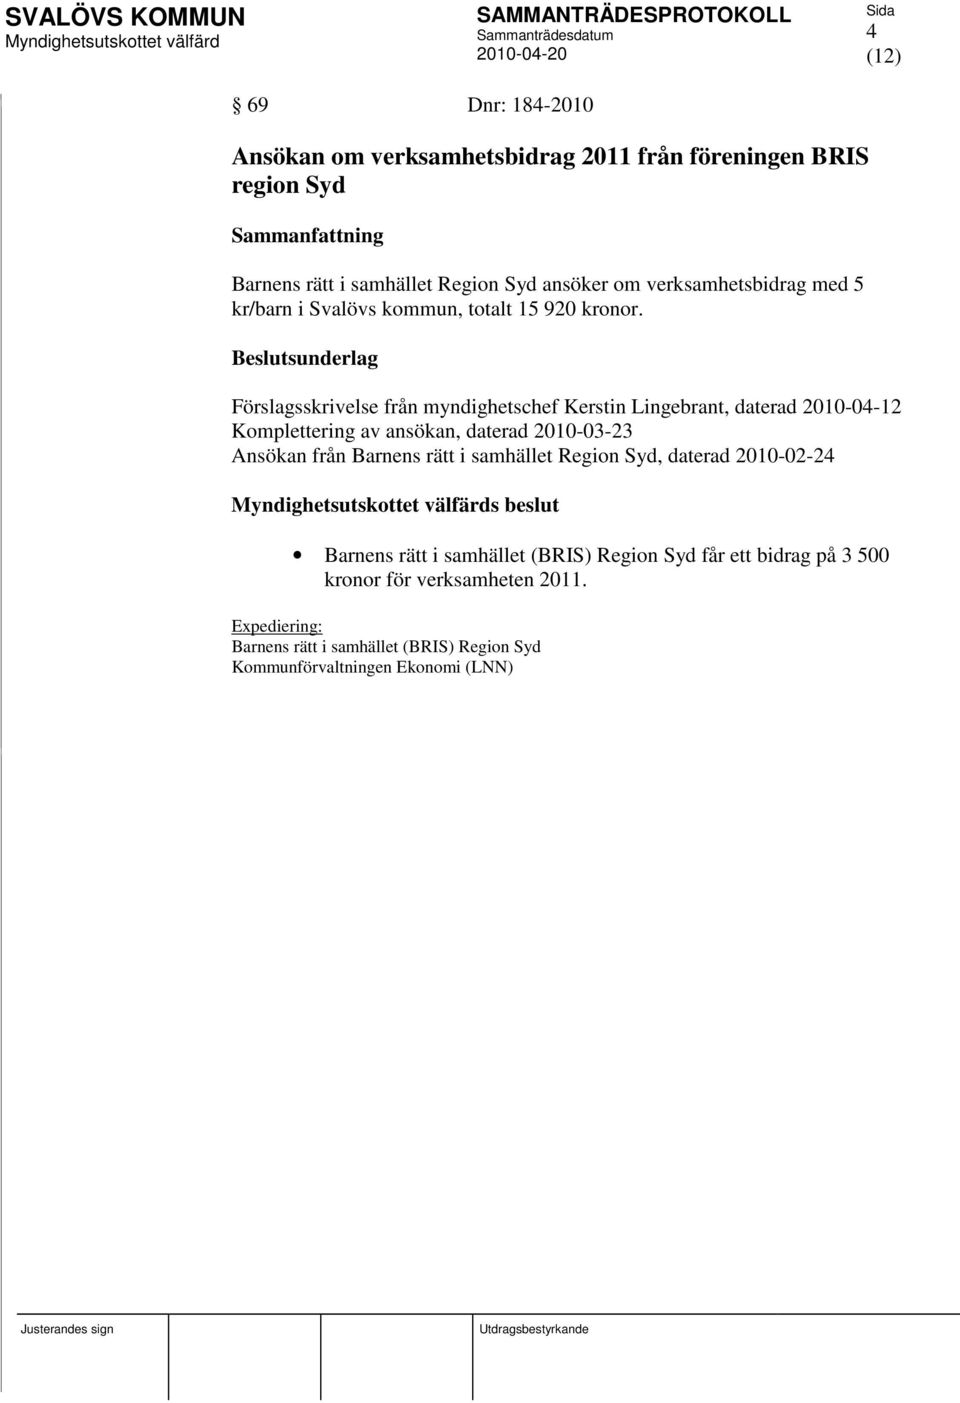 Förslagsskrivelse från myndighetschef Kerstin Lingebrant, daterad 2010-04-12 Komplettering av ansökan, daterad 2010-03-23 Ansökan från Barnens rätt